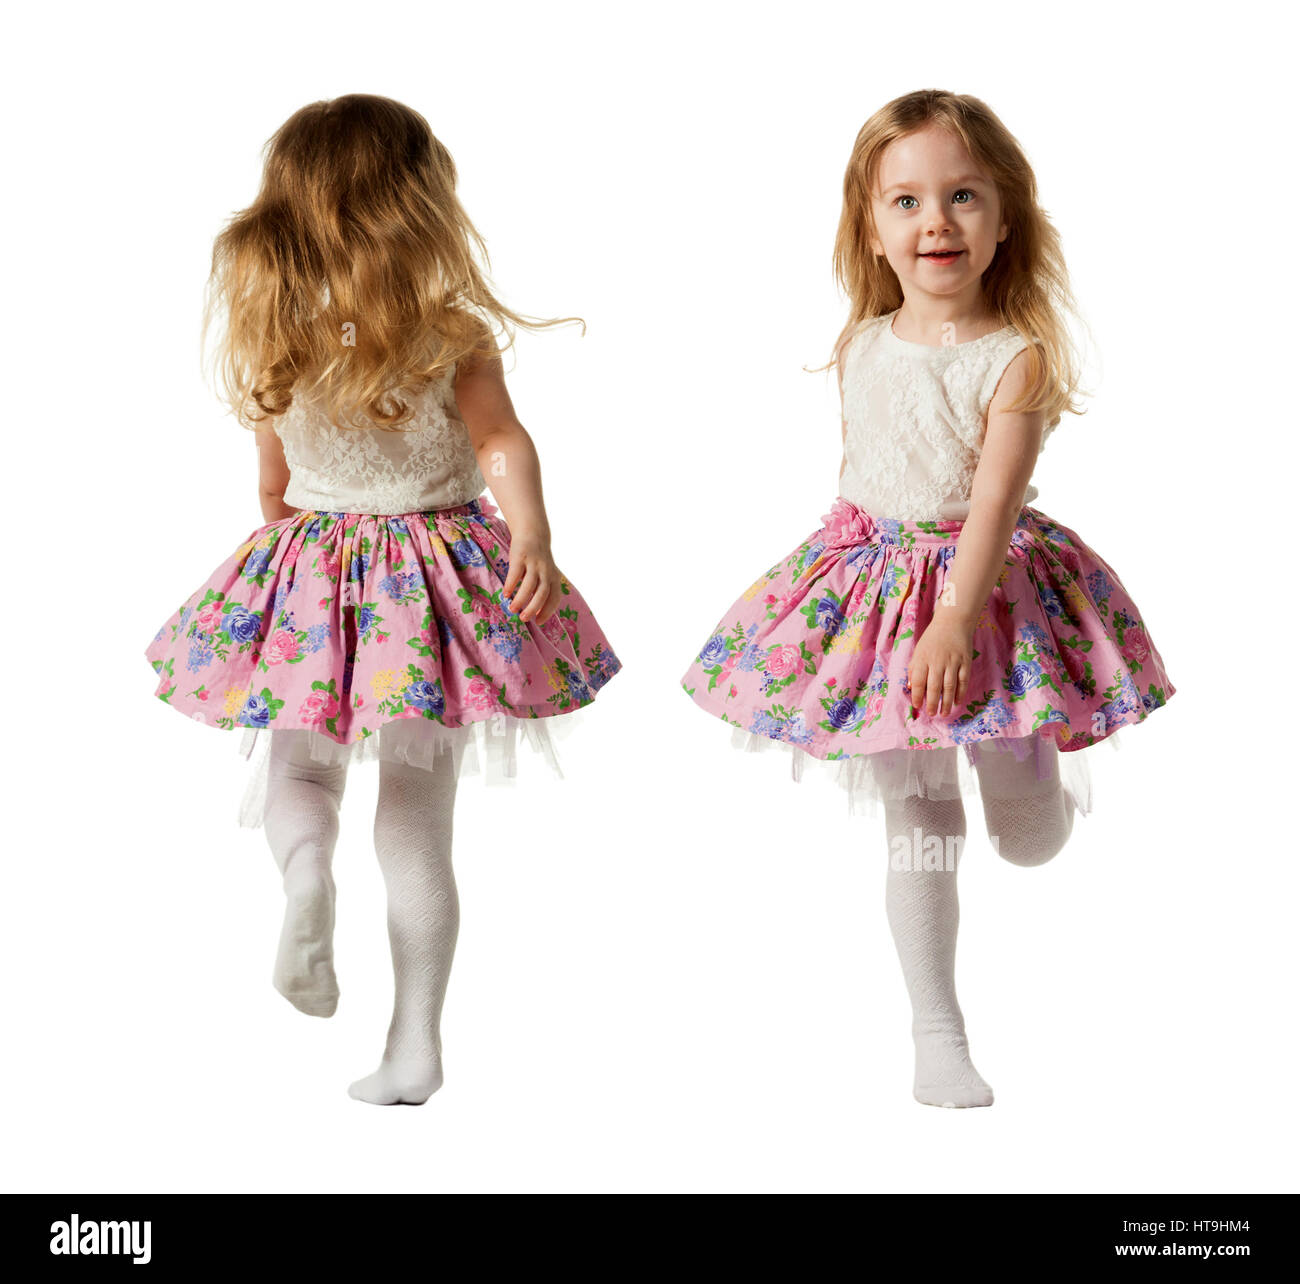 Carino tre-anno ragazza è jumping, acceso, dancing, ridendo. I suoi capelli non pettinati.I solated su sfondo bianco Foto Stock